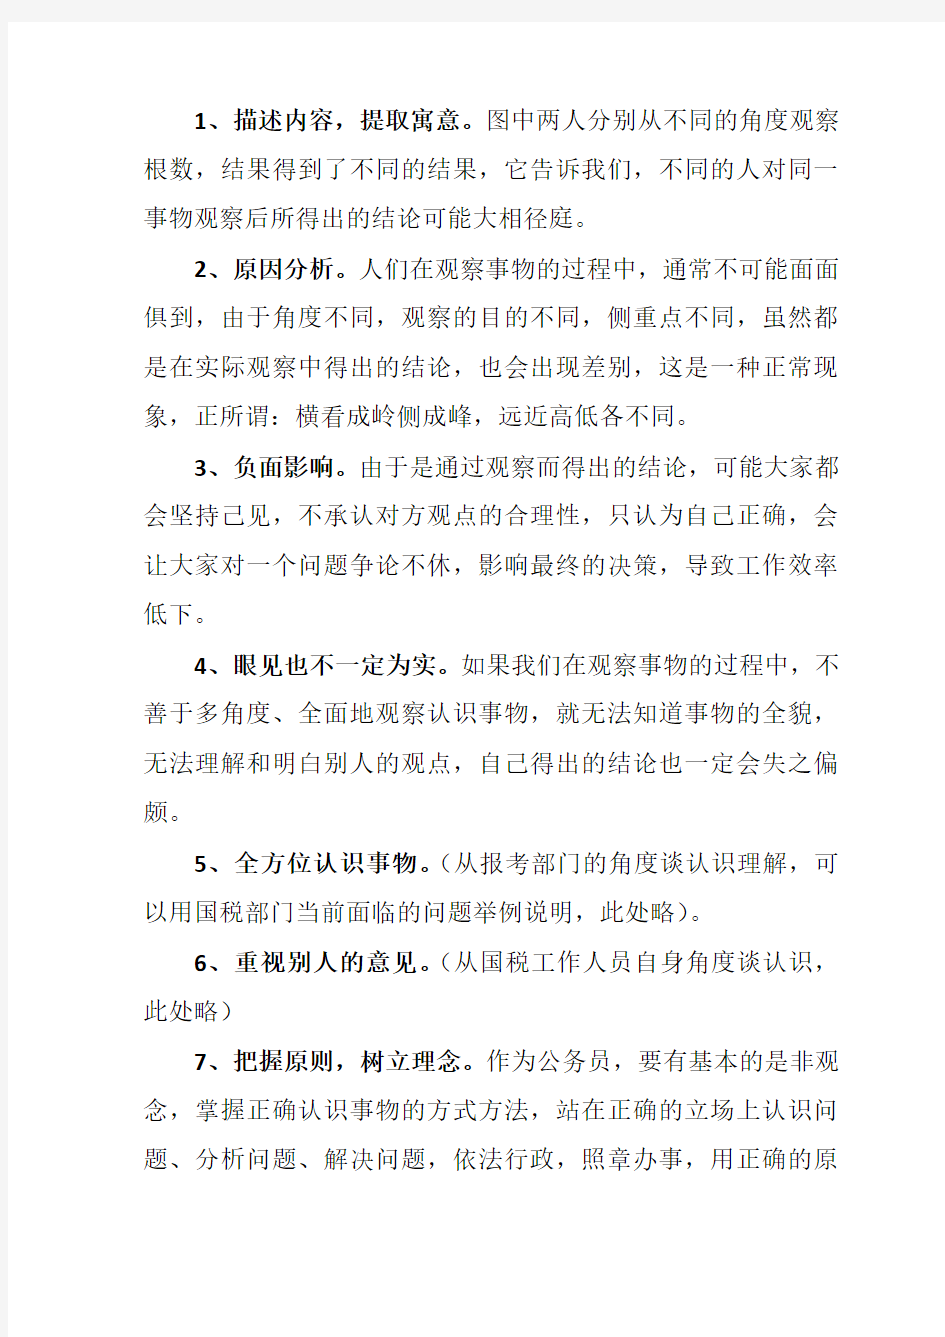 陈建军团队解析2015年3月12日国考国税面试真题